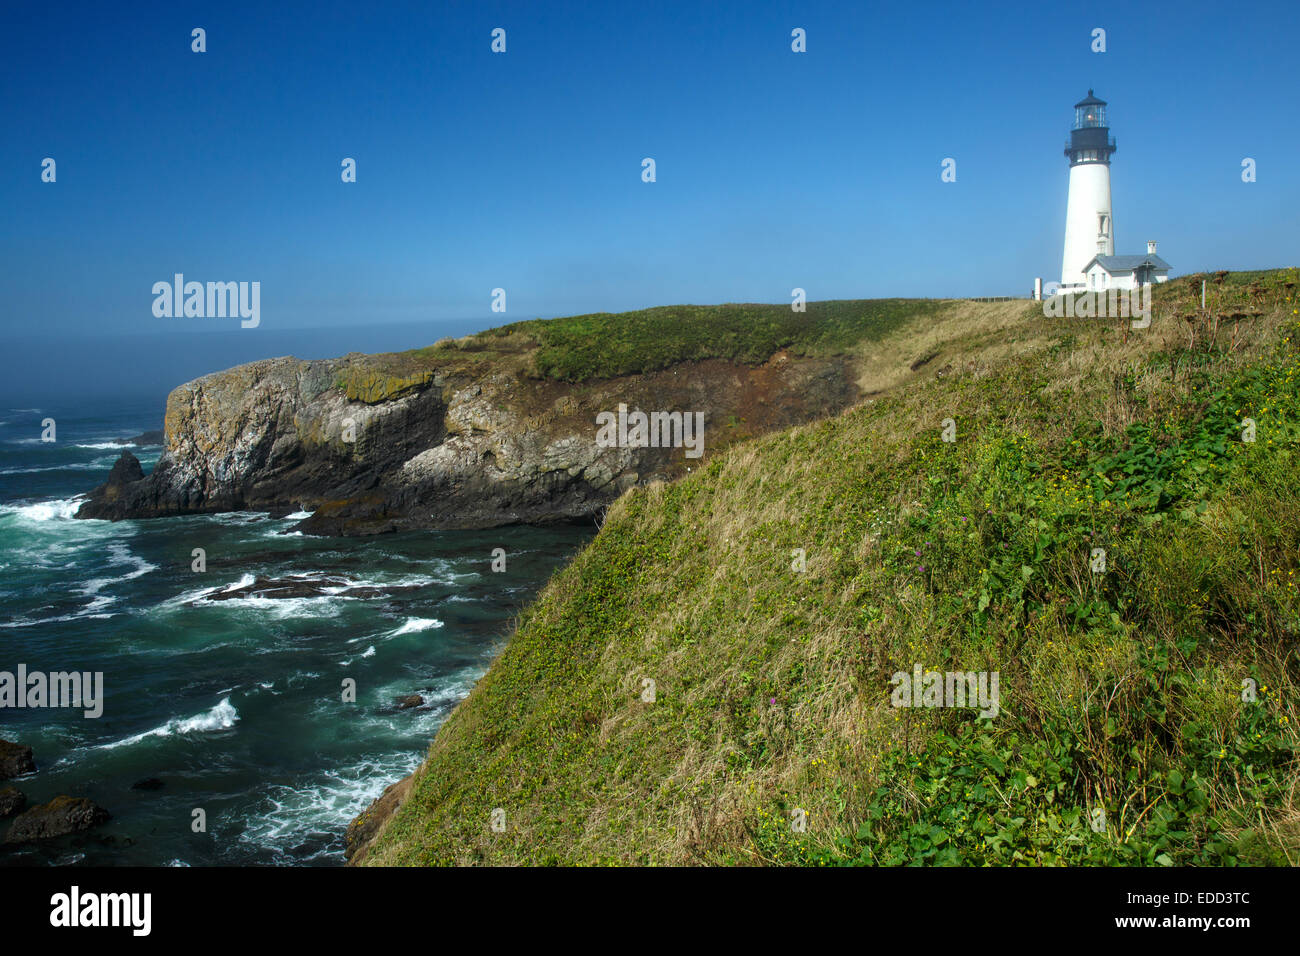 Yaquina Head Lighthouse on the Oregon coast Stock Photo